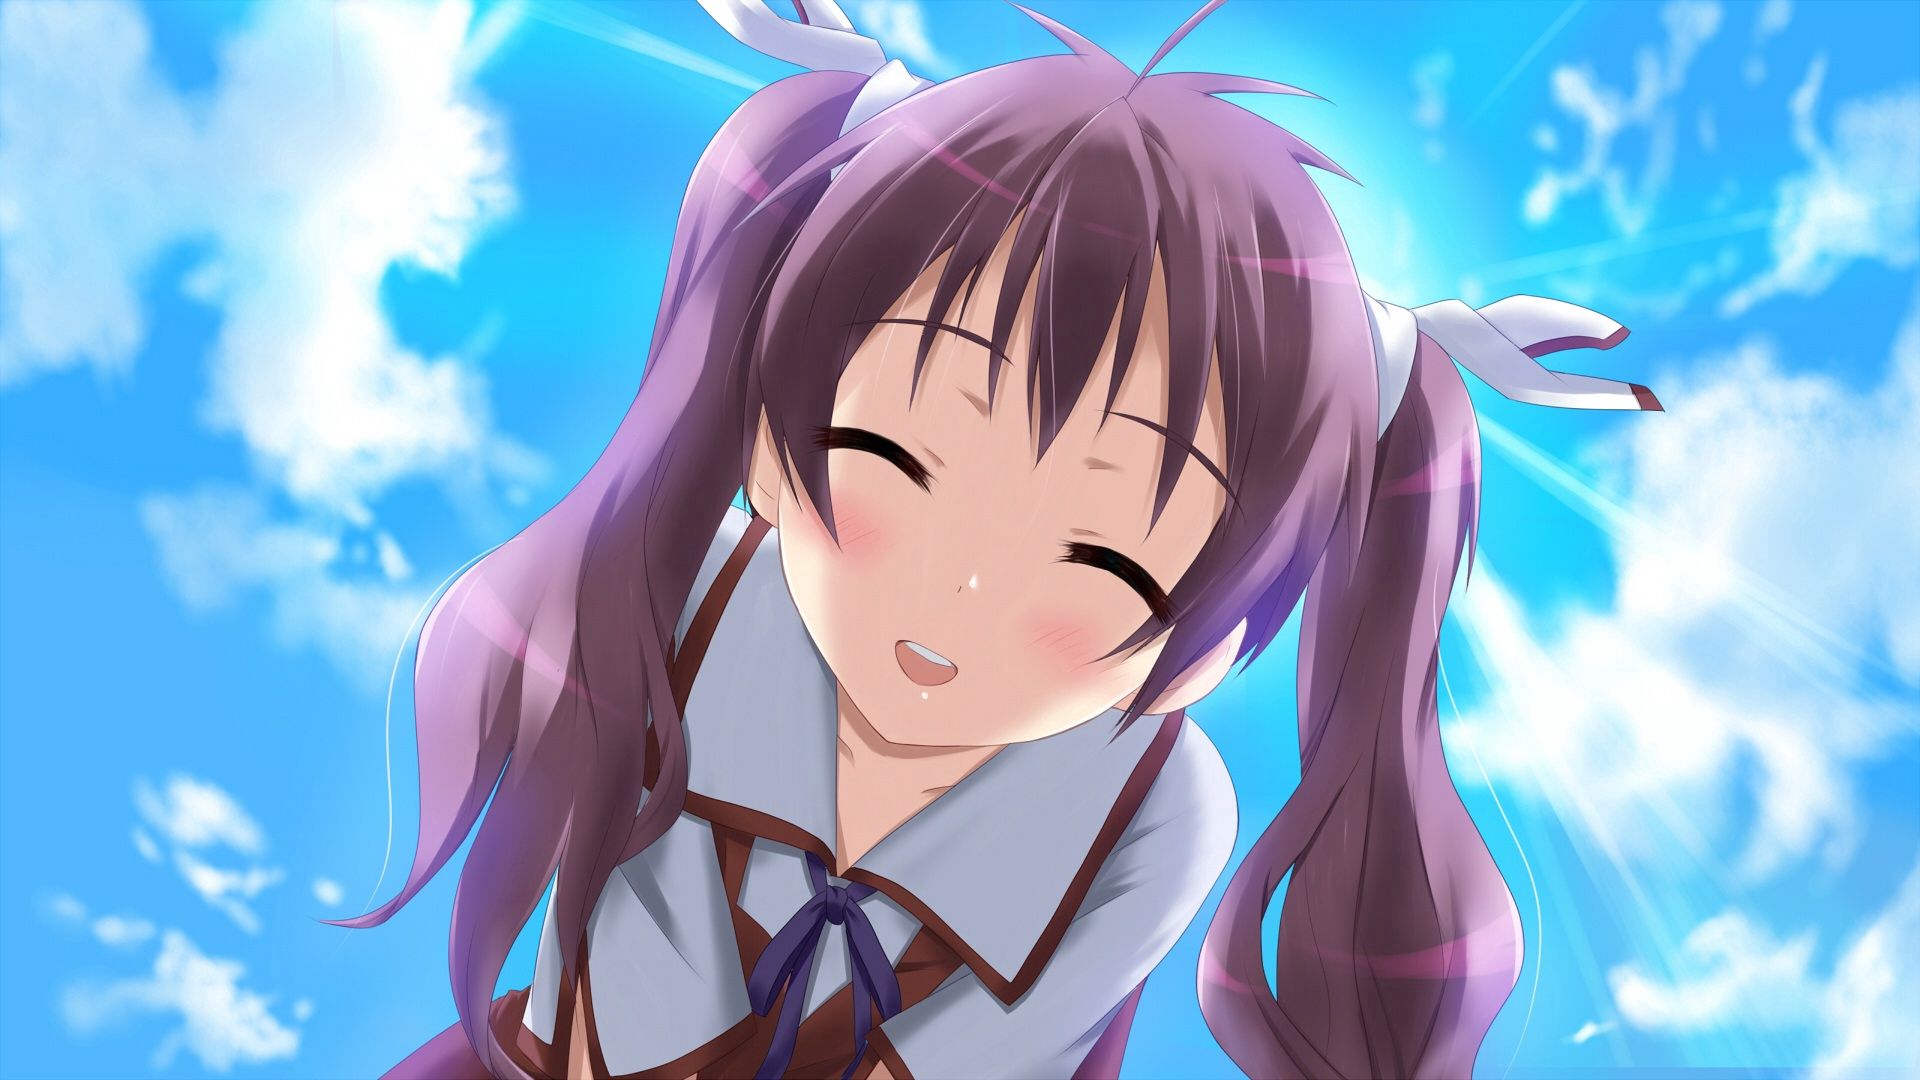 Download mobile wallpaper Sun, Tenderness, Girl, Smile, Anime for free.